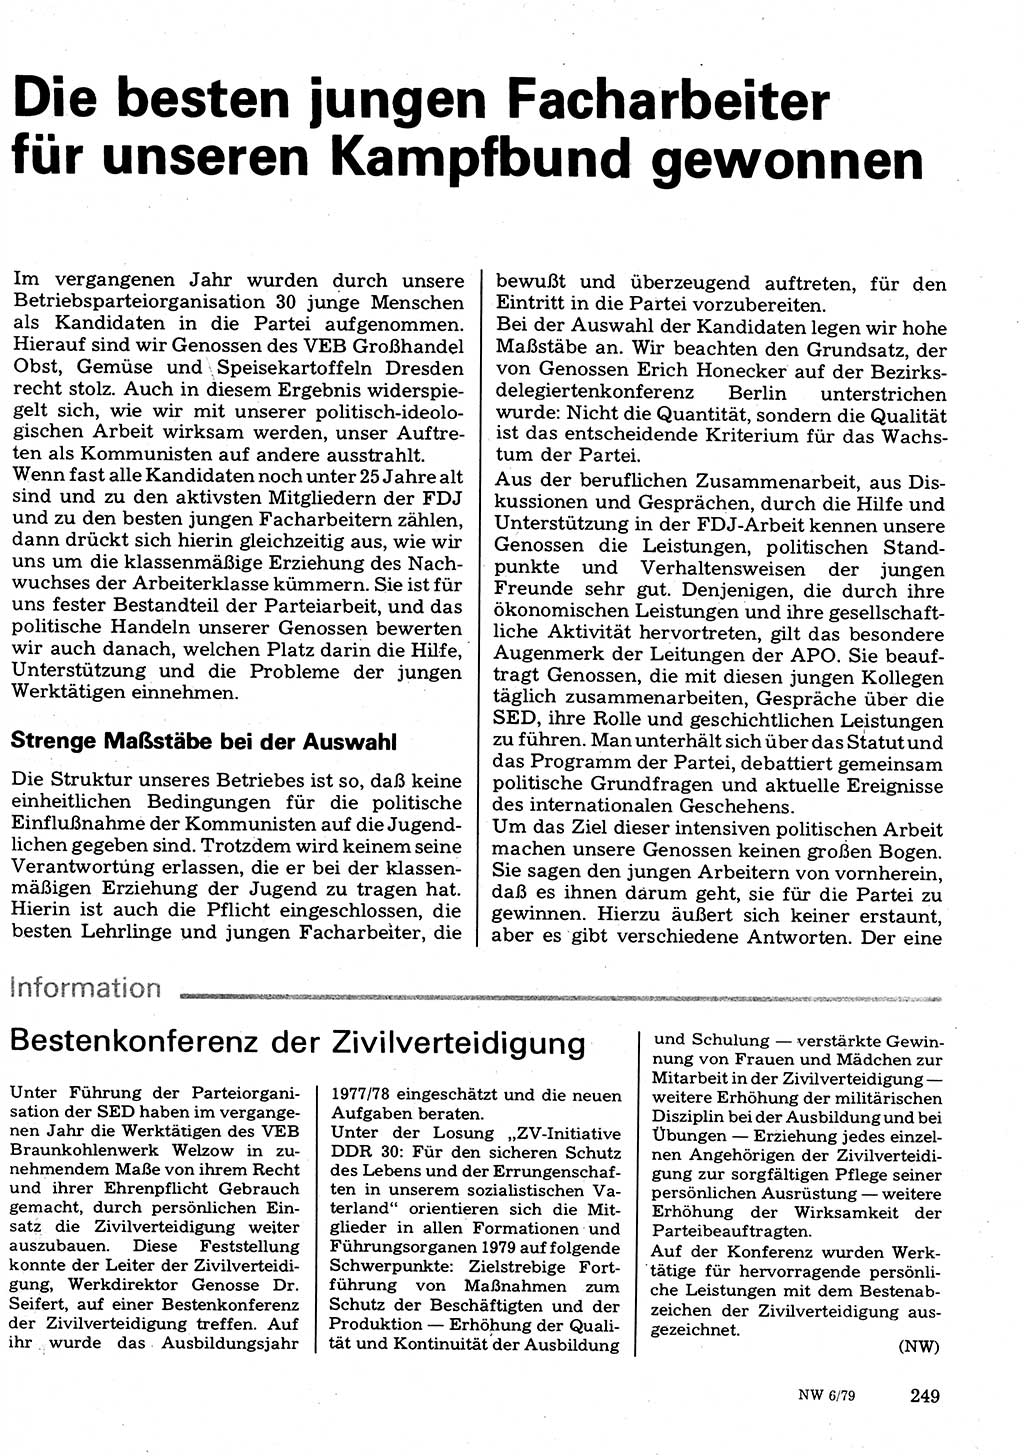 Neuer Weg (NW), Organ des Zentralkomitees (ZK) der SED (Sozialistische Einheitspartei Deutschlands) für Fragen des Parteilebens, 34. Jahrgang [Deutsche Demokratische Republik (DDR)] 1979, Seite 249 (NW ZK SED DDR 1979, S. 249)